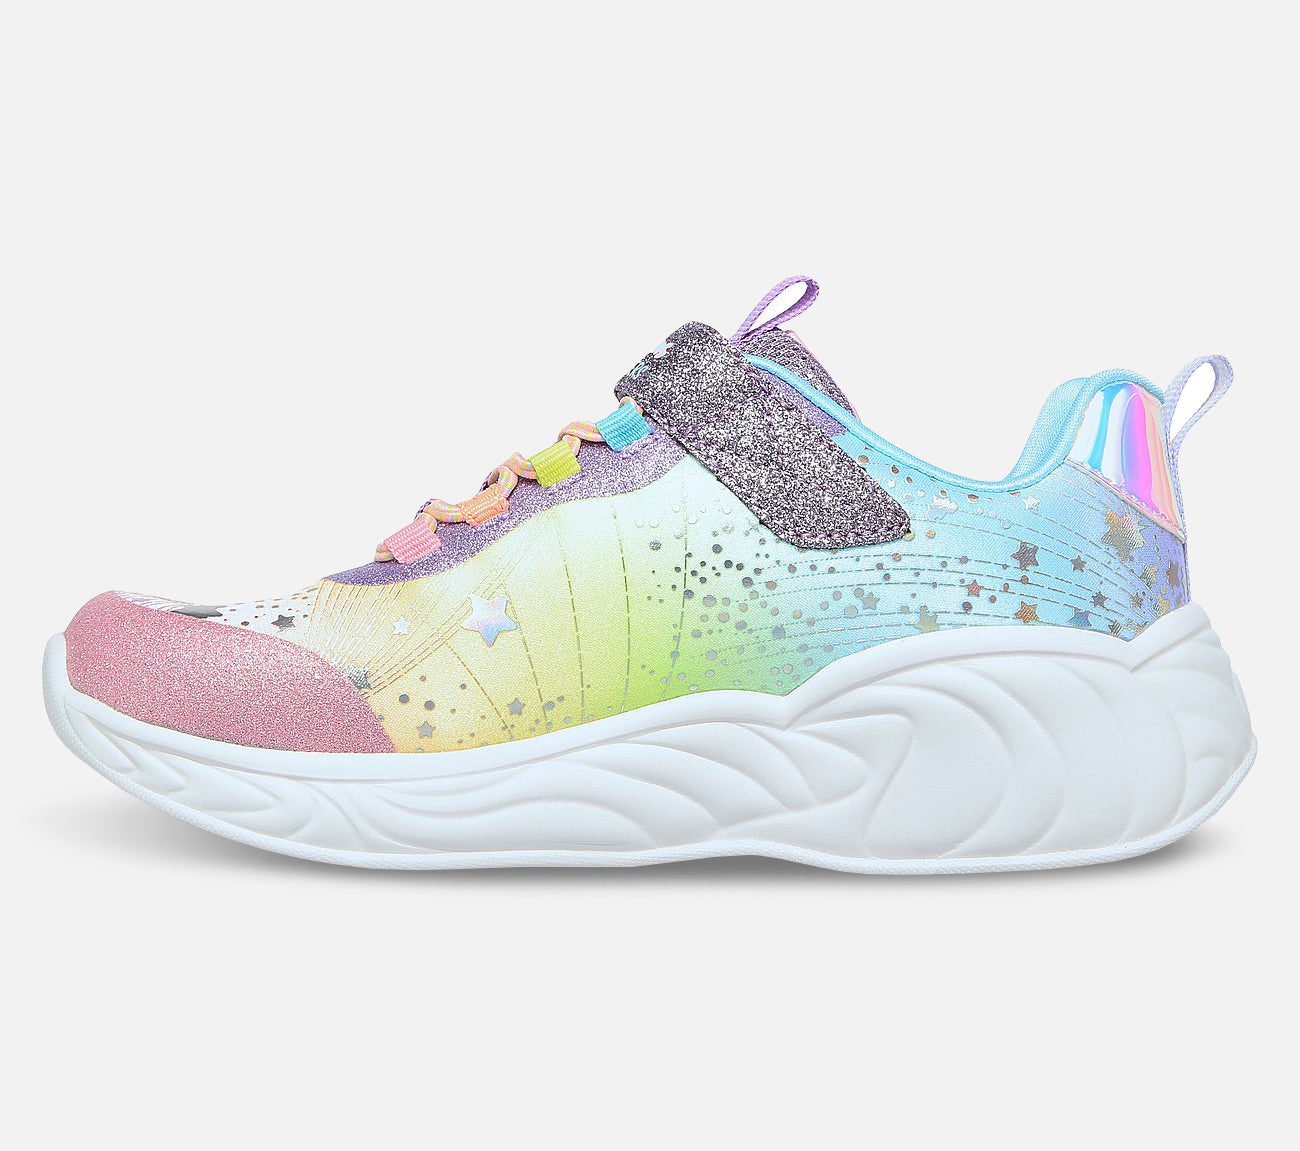 S-Lights: Unicorn Dreams Shoe Skechers